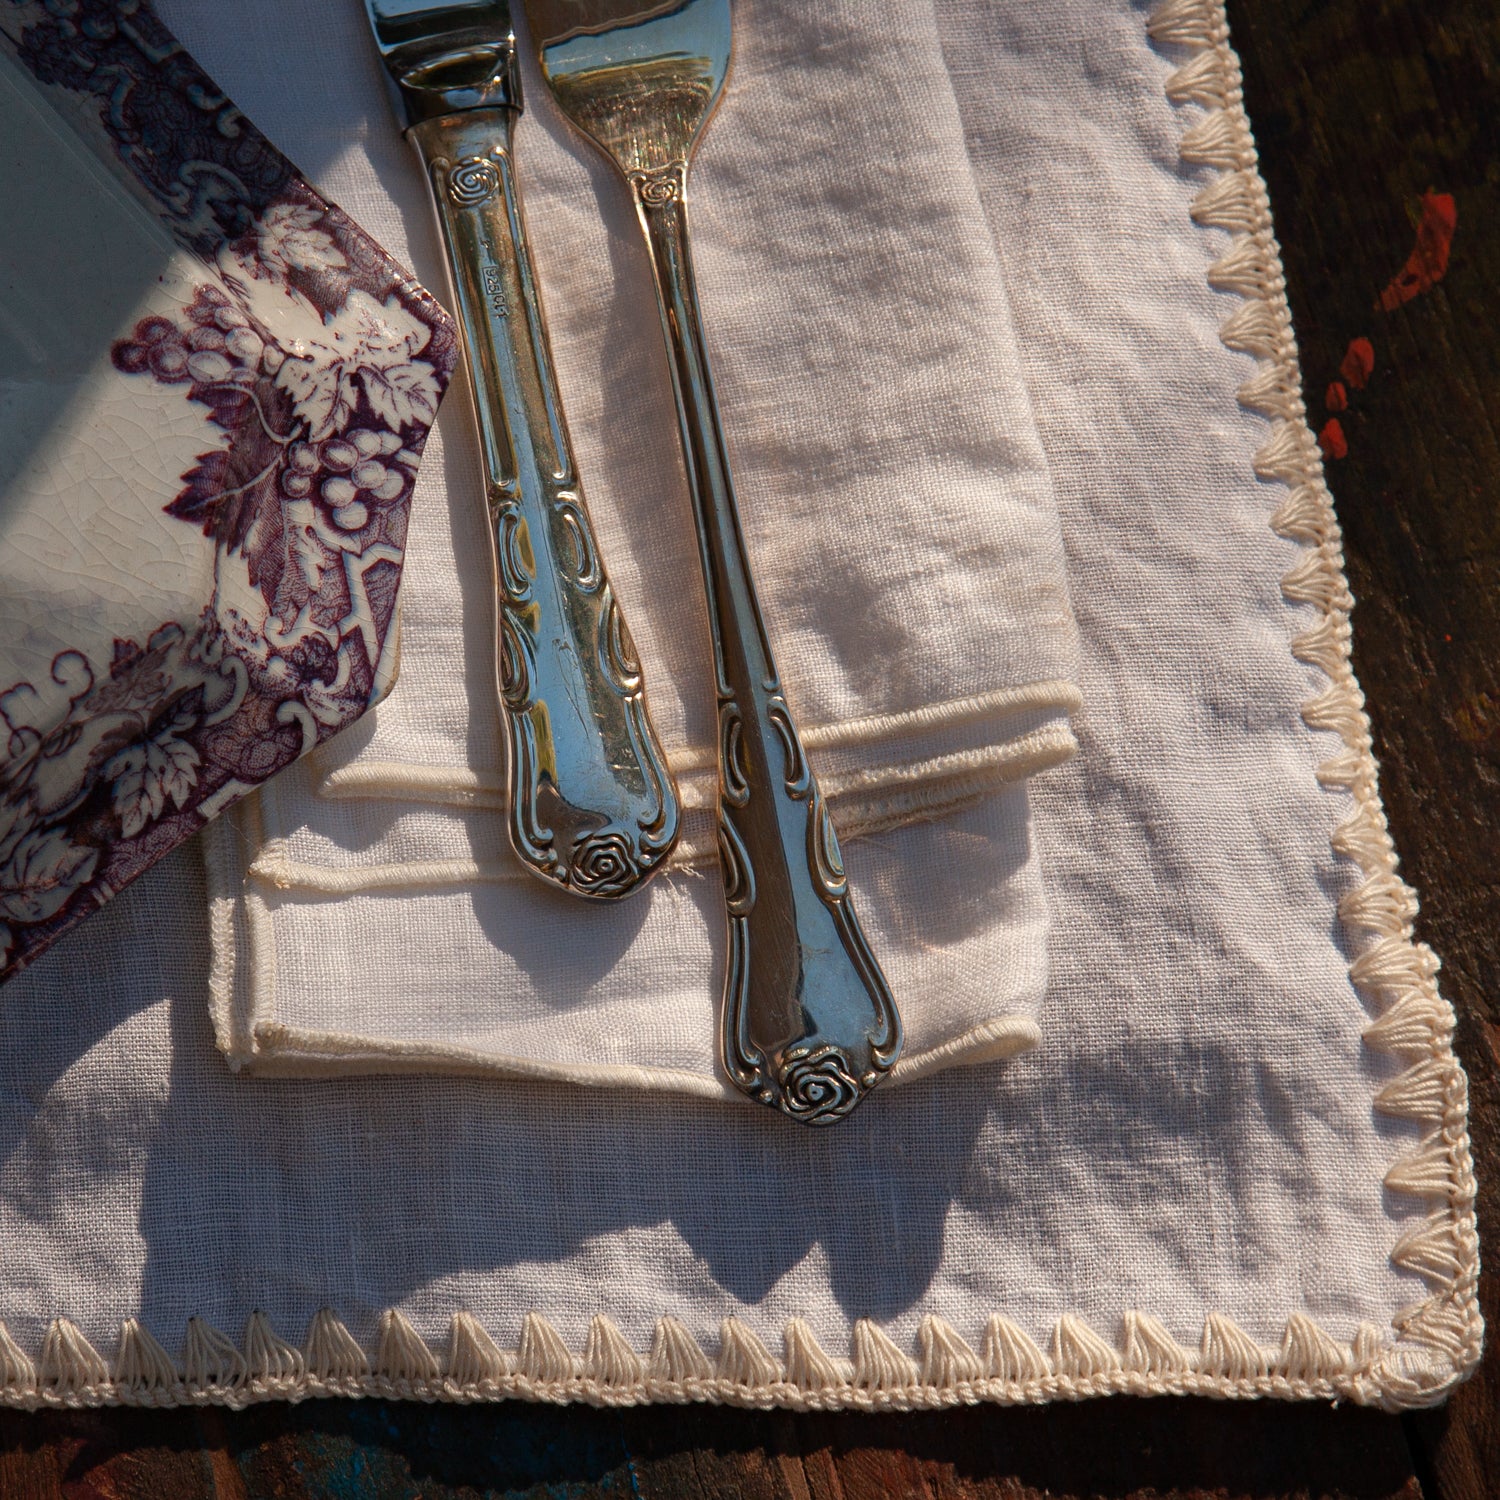 Detalle de servilleta de lino blanco con repulgo sobre individual marieta.